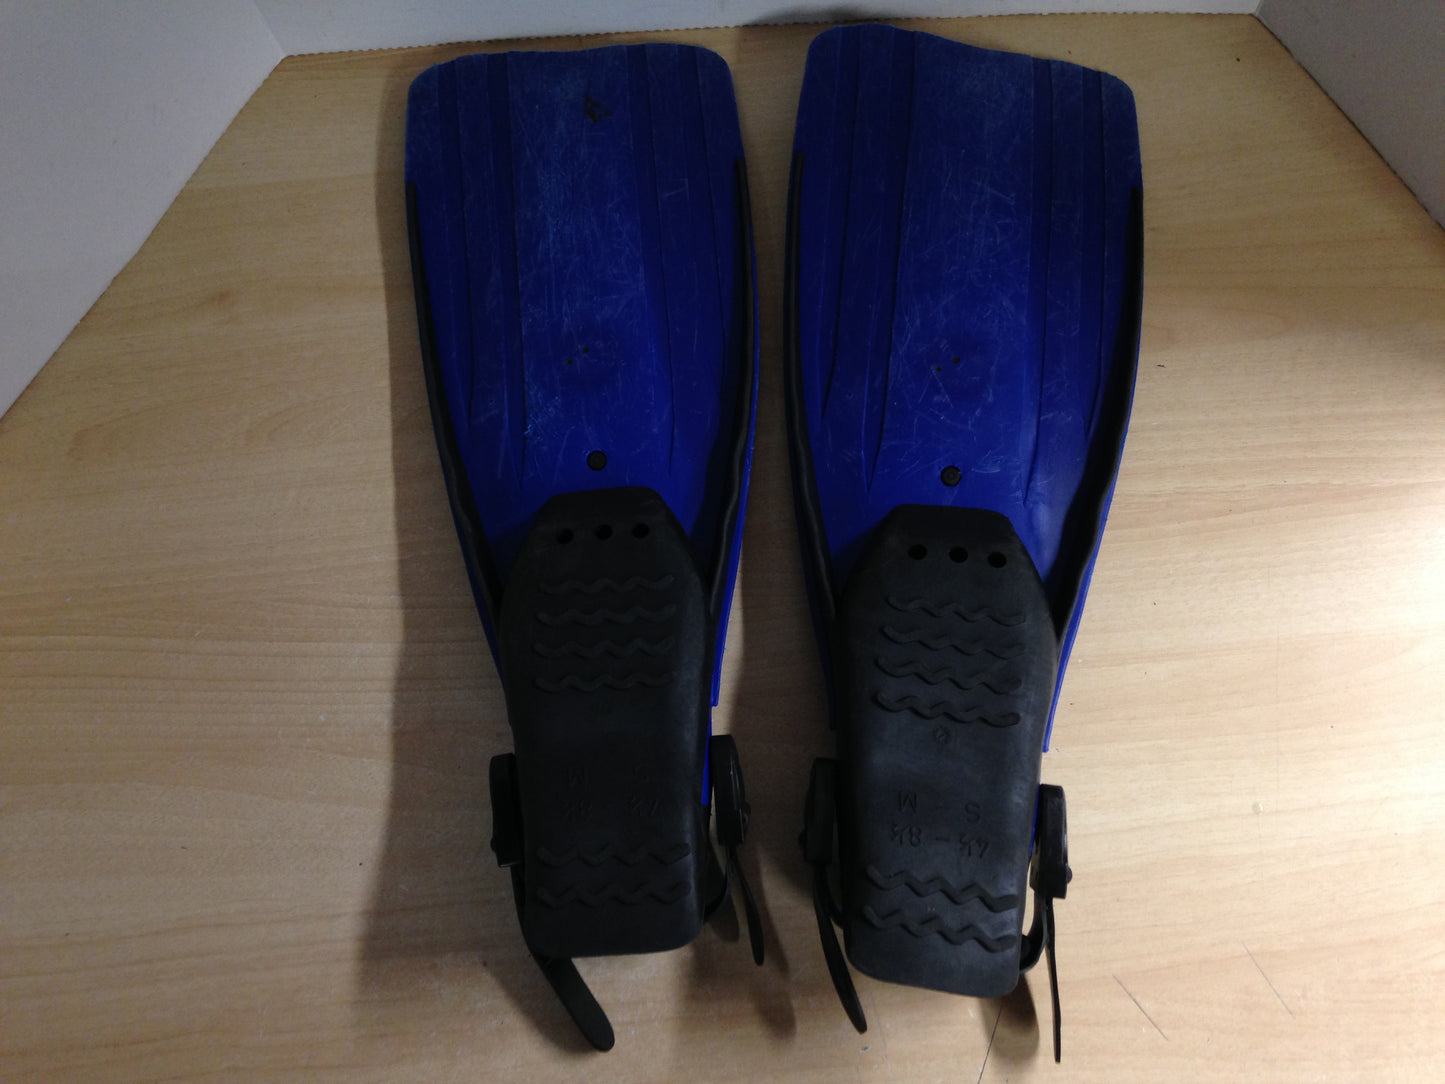 Snorkel Dive Fins  Men's Shoe Size 4.5-8.5 US Divers Blue Black Some Wear and Scratches